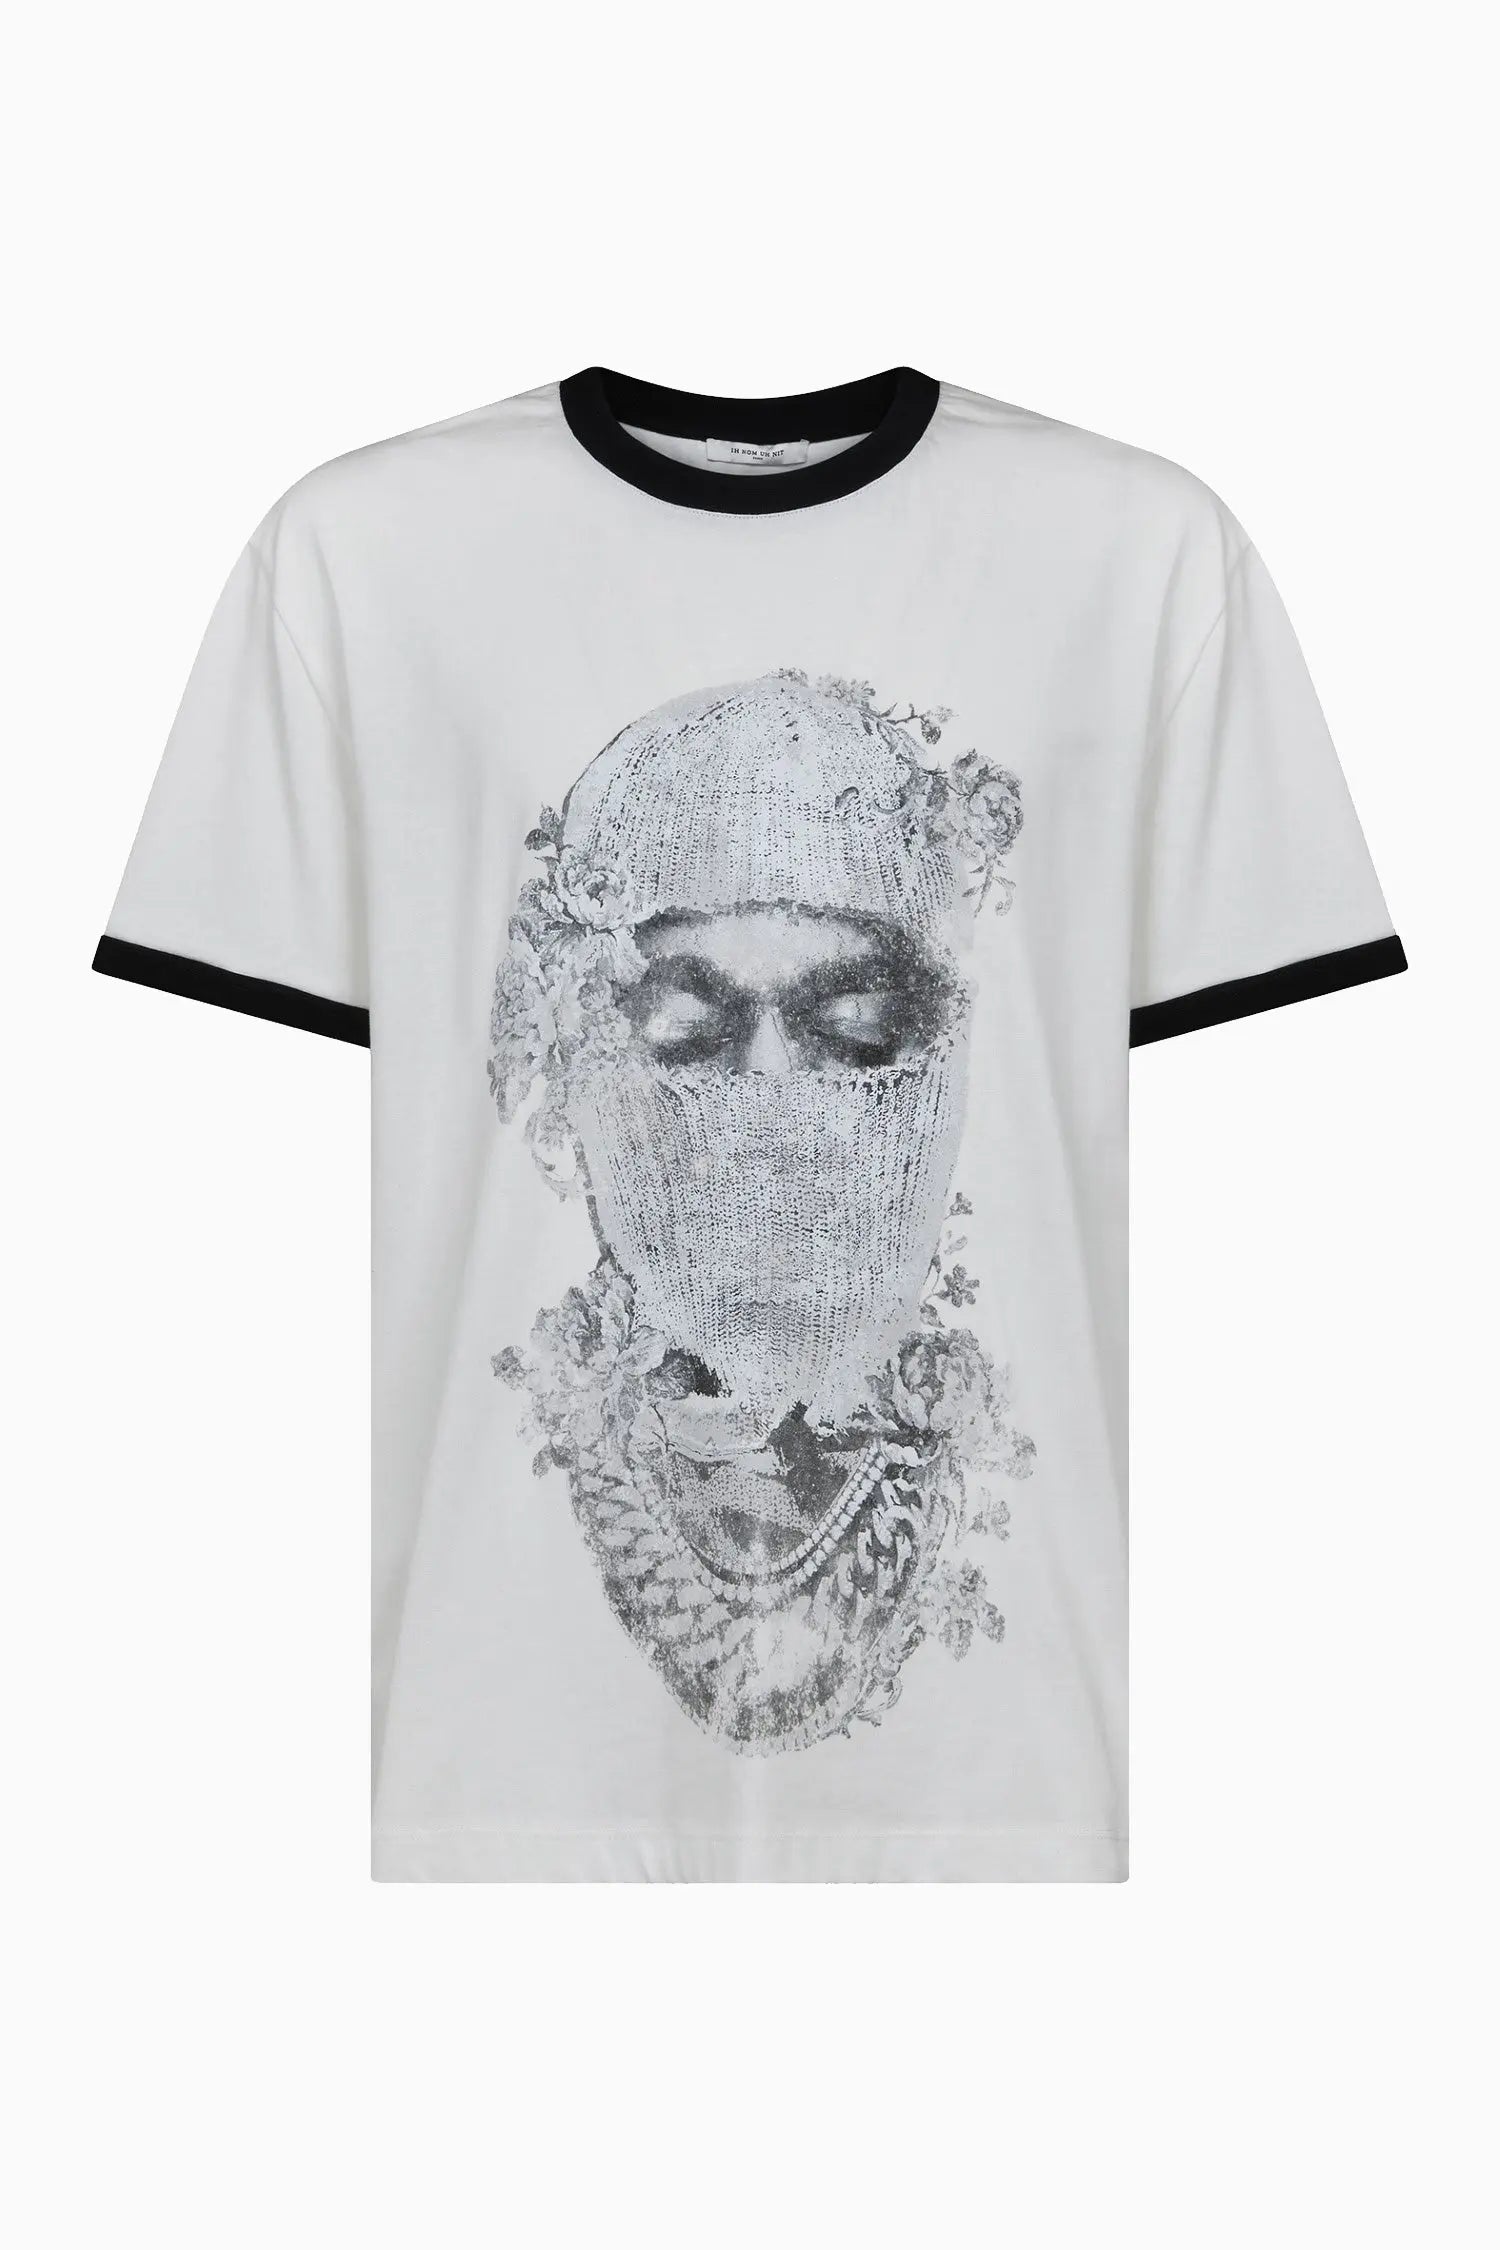 T-shirt with rose-patterned mask - IH NOM UH NIT